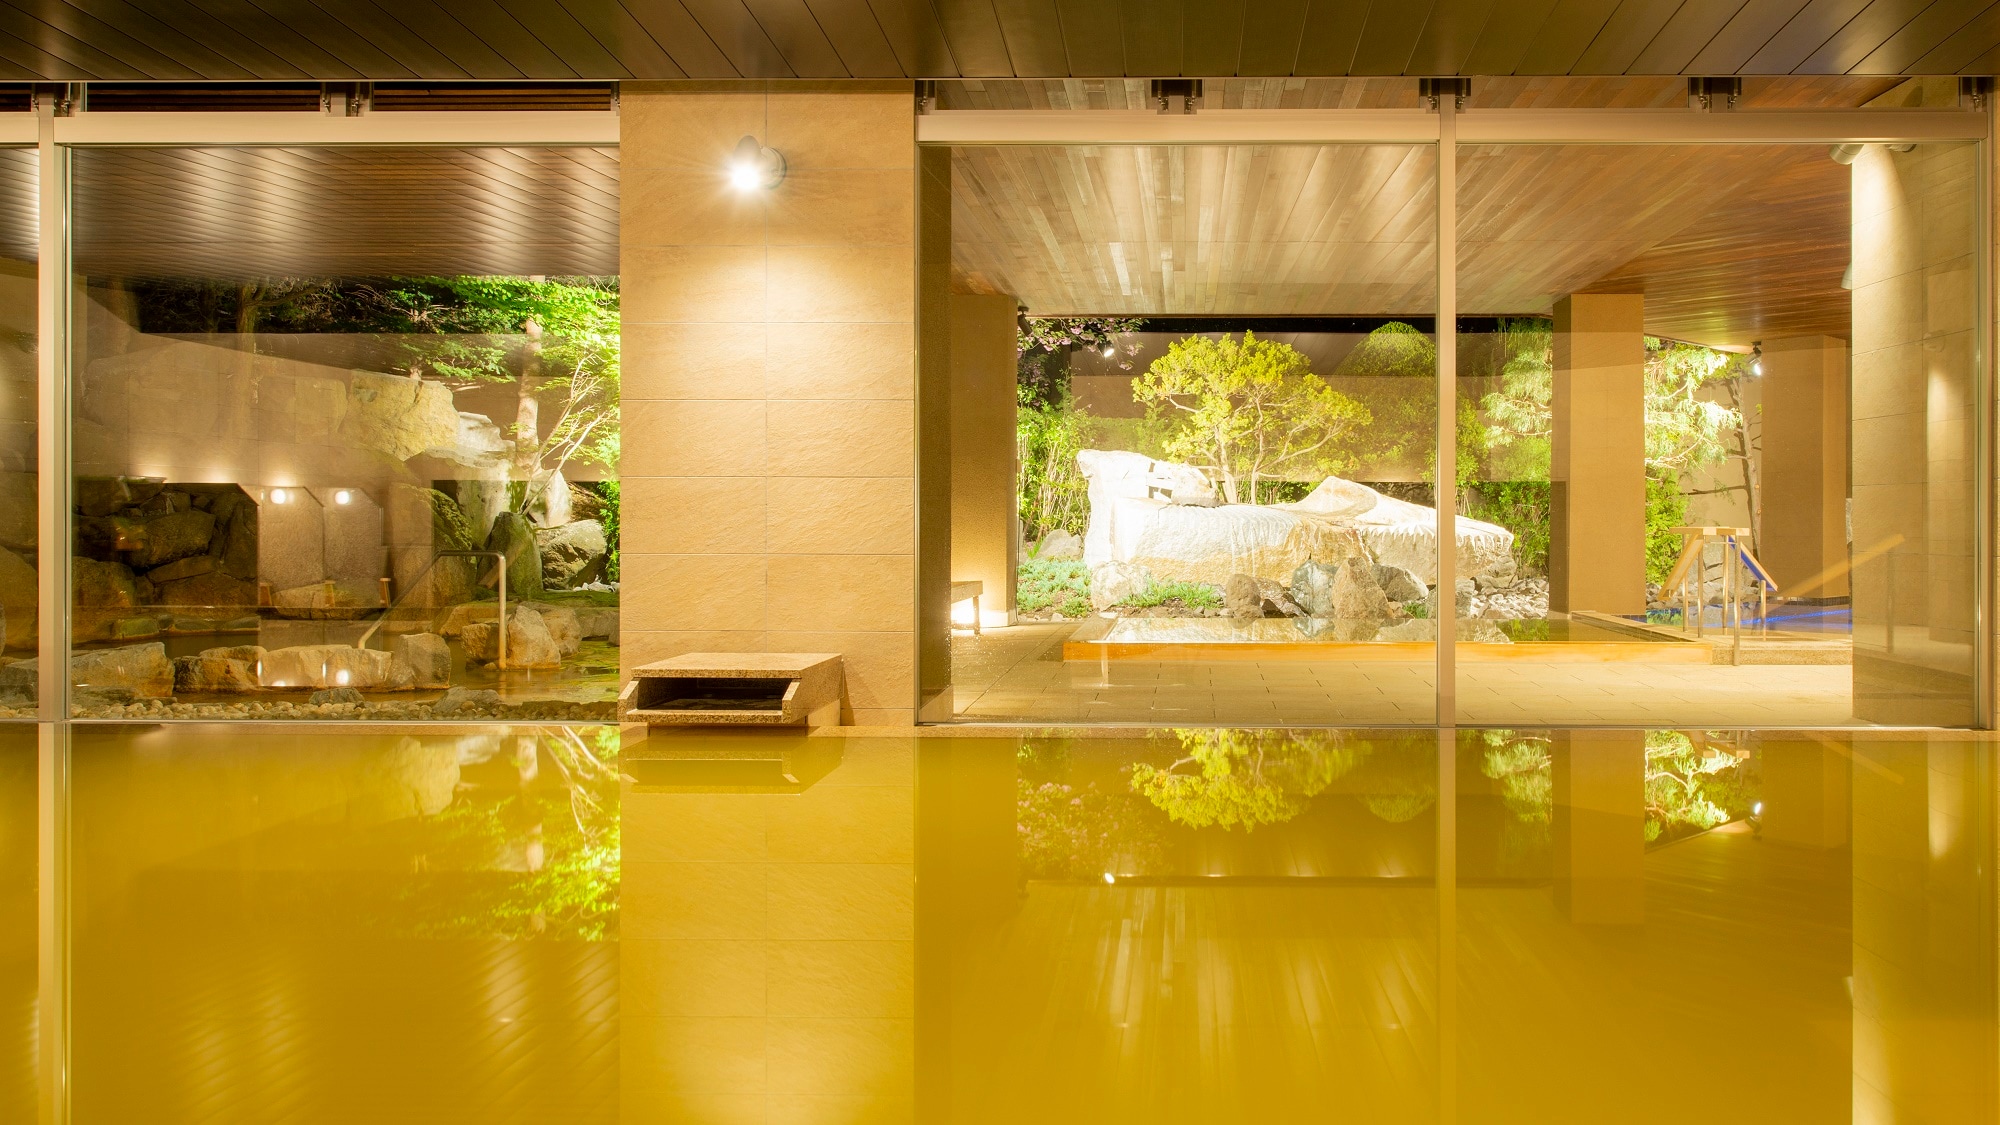 [月之湯] 映照庭園綠葉的室內浴池和可以眺望變幻景色的大浴場